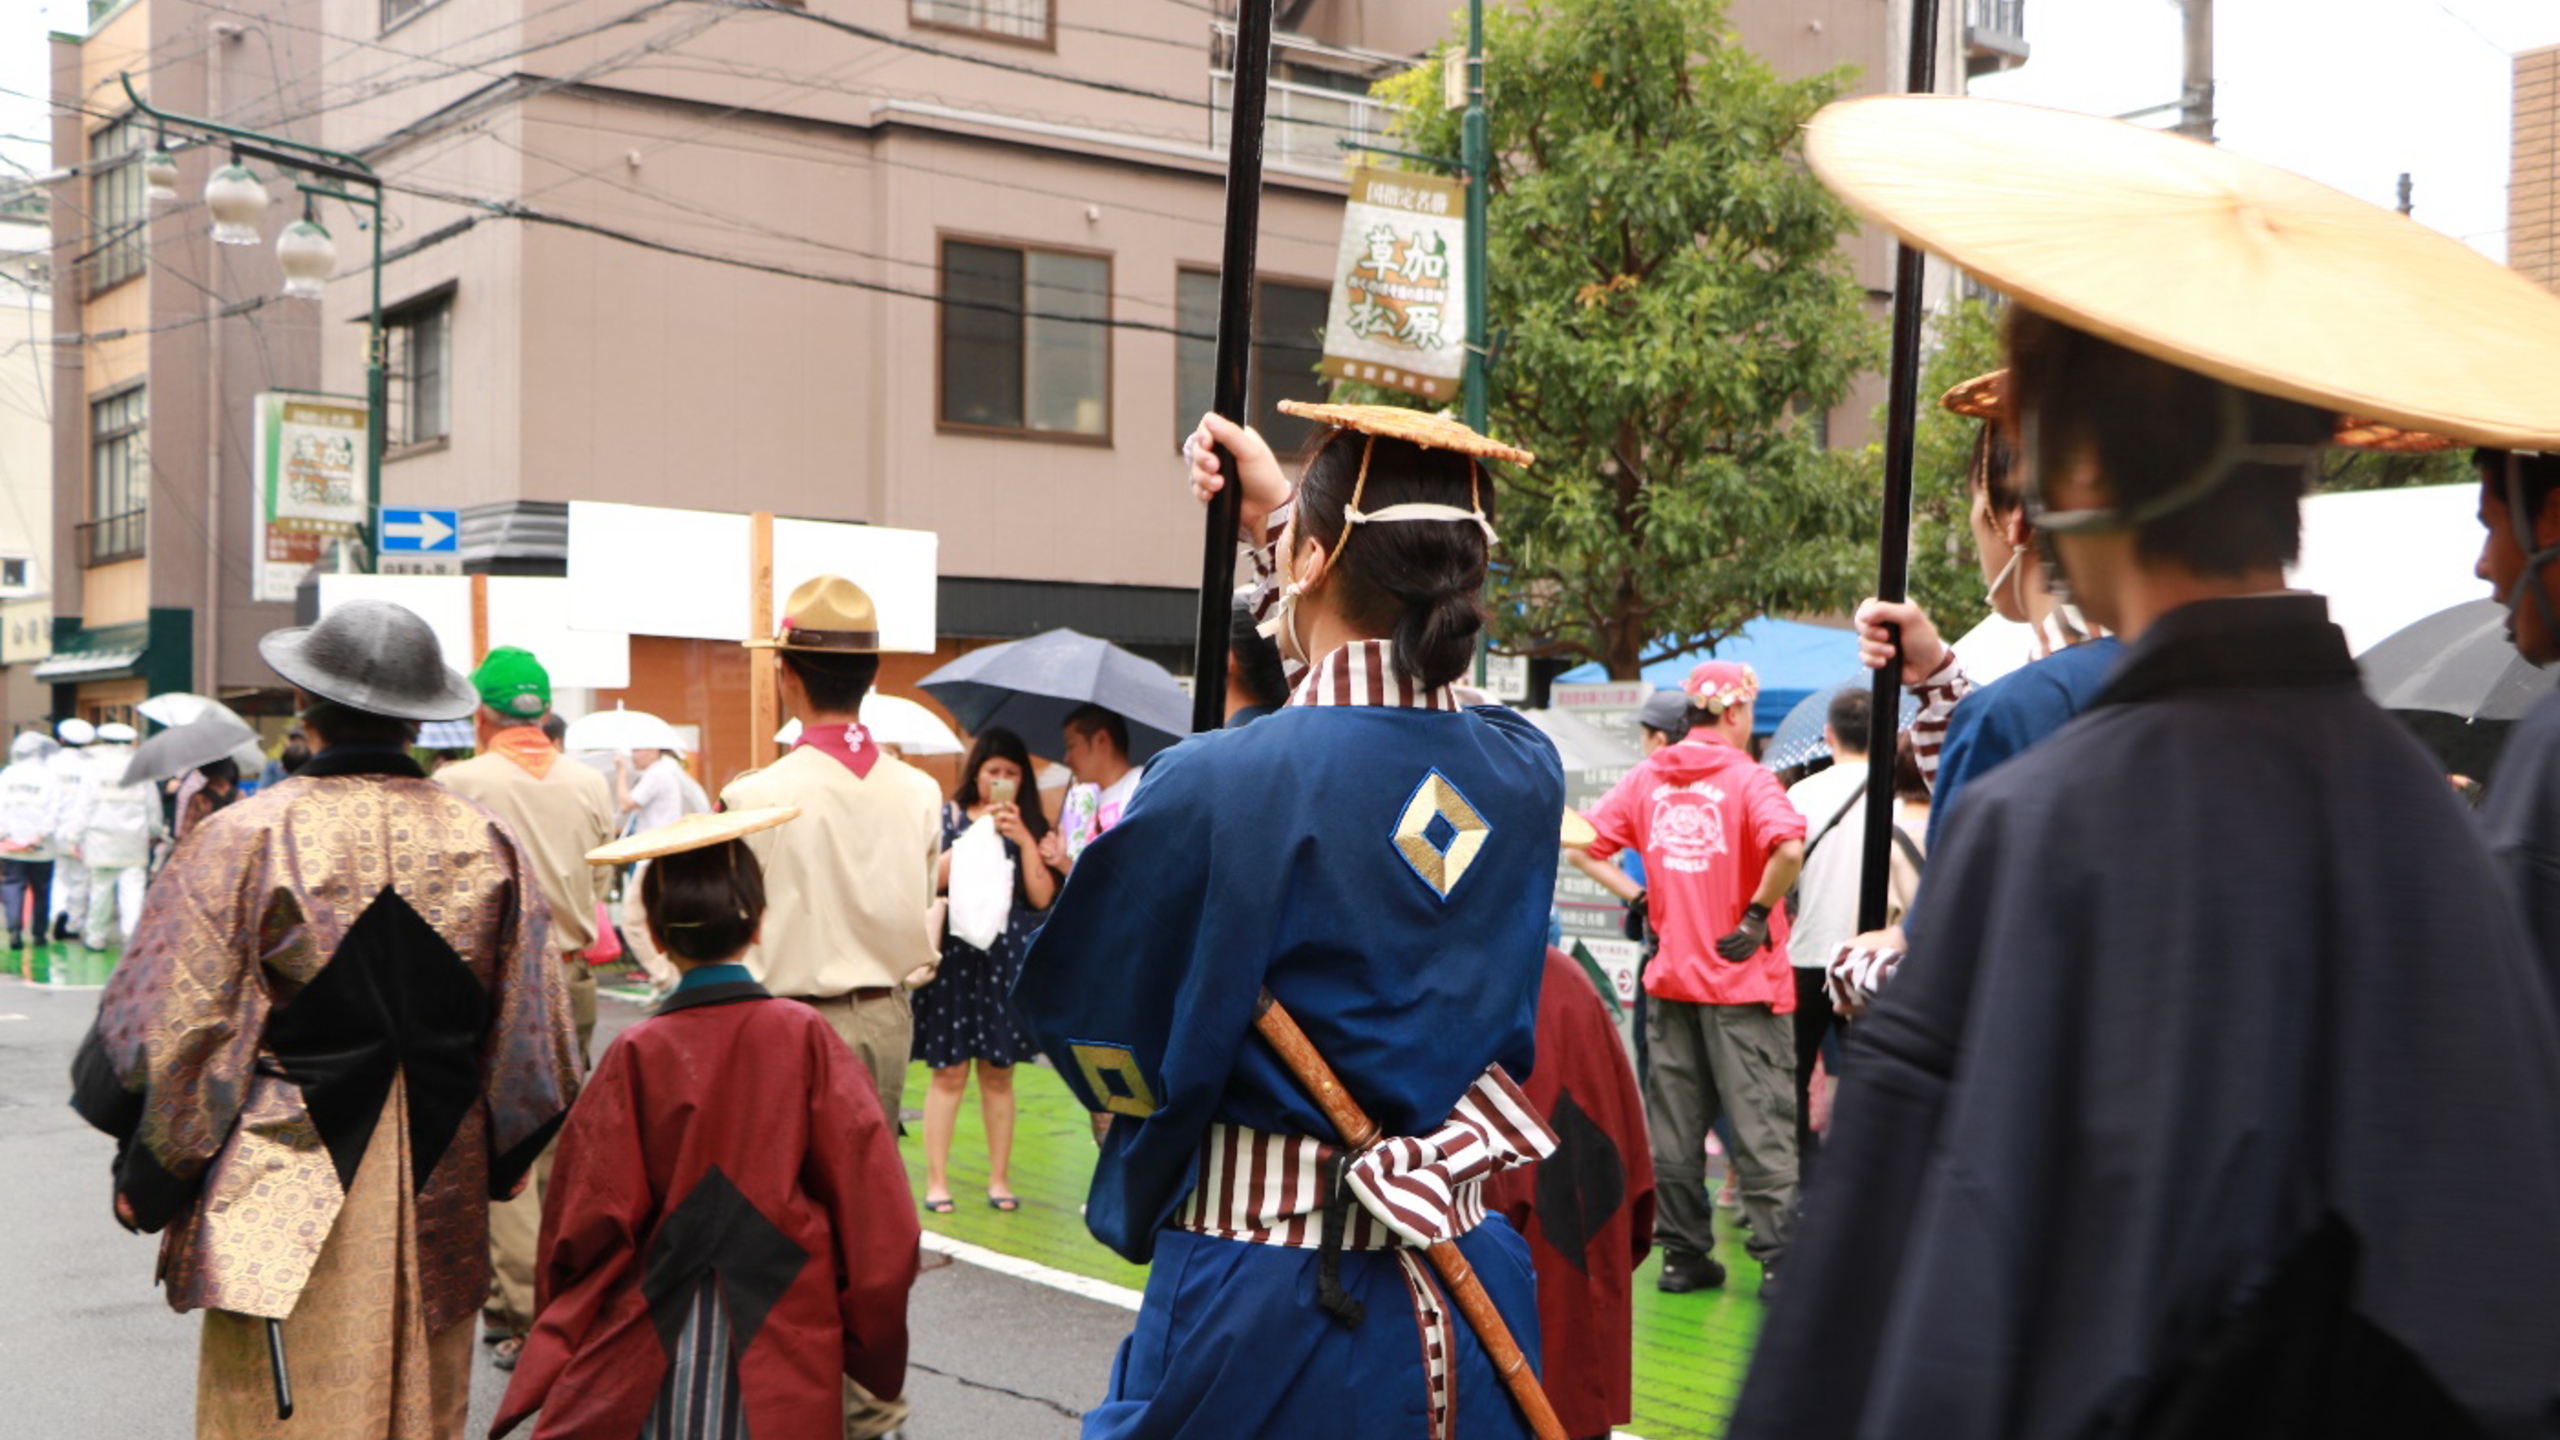 【草加宿場祭り】草加駅東口から草加宿旧道エリアで開催されるお祭りです。